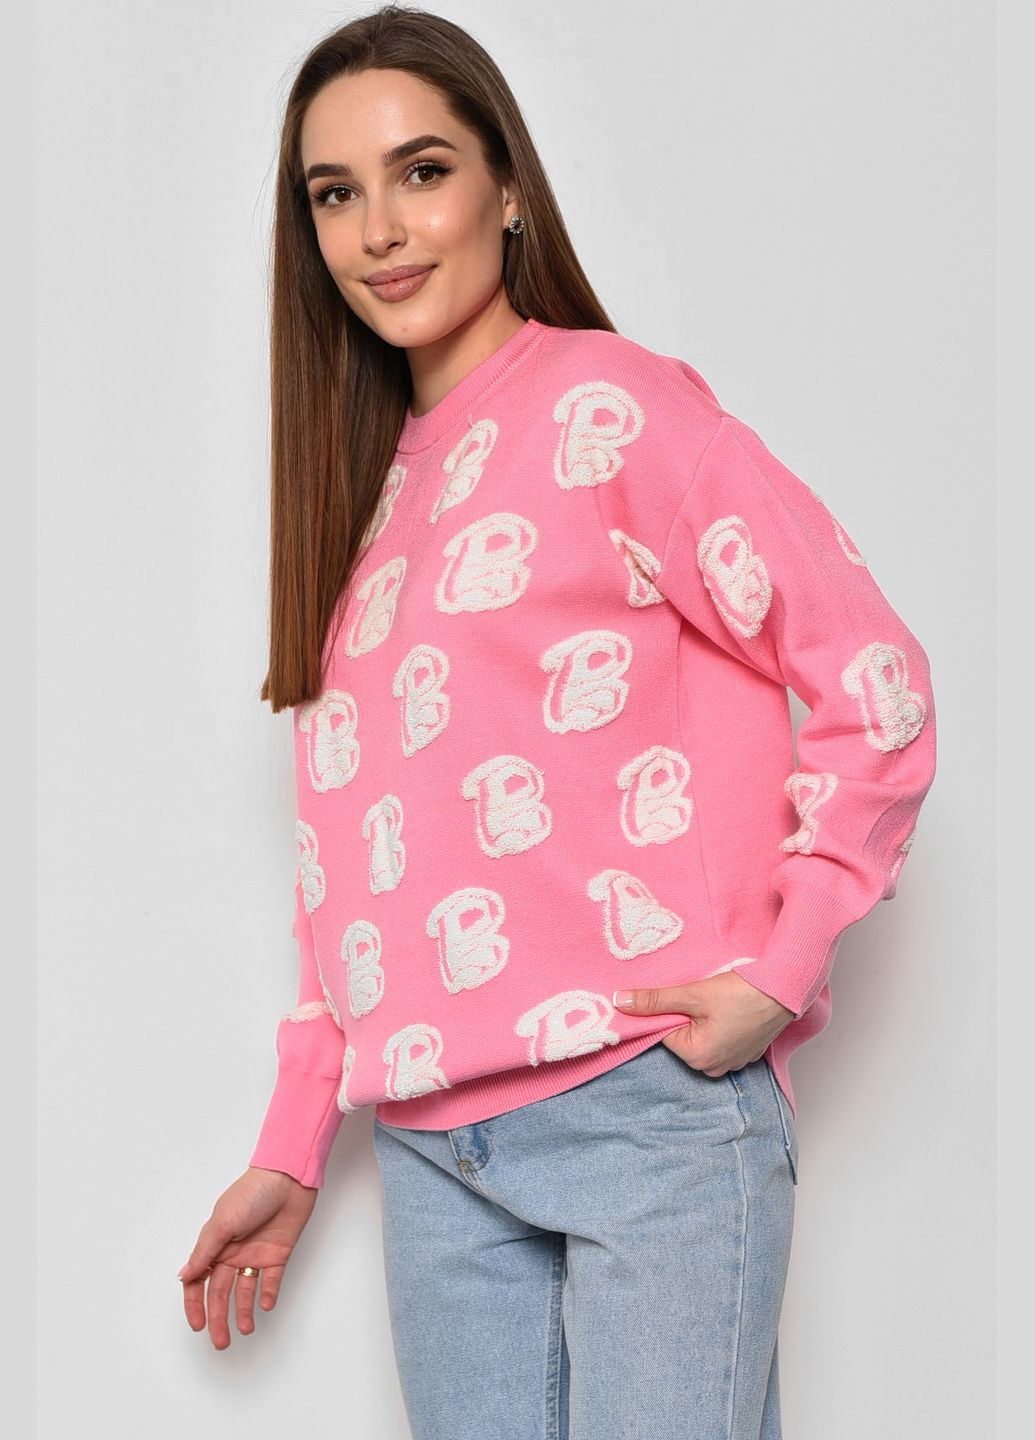 Розовый зимний свитер женский с принтом розового цвета пуловер Let's Shop